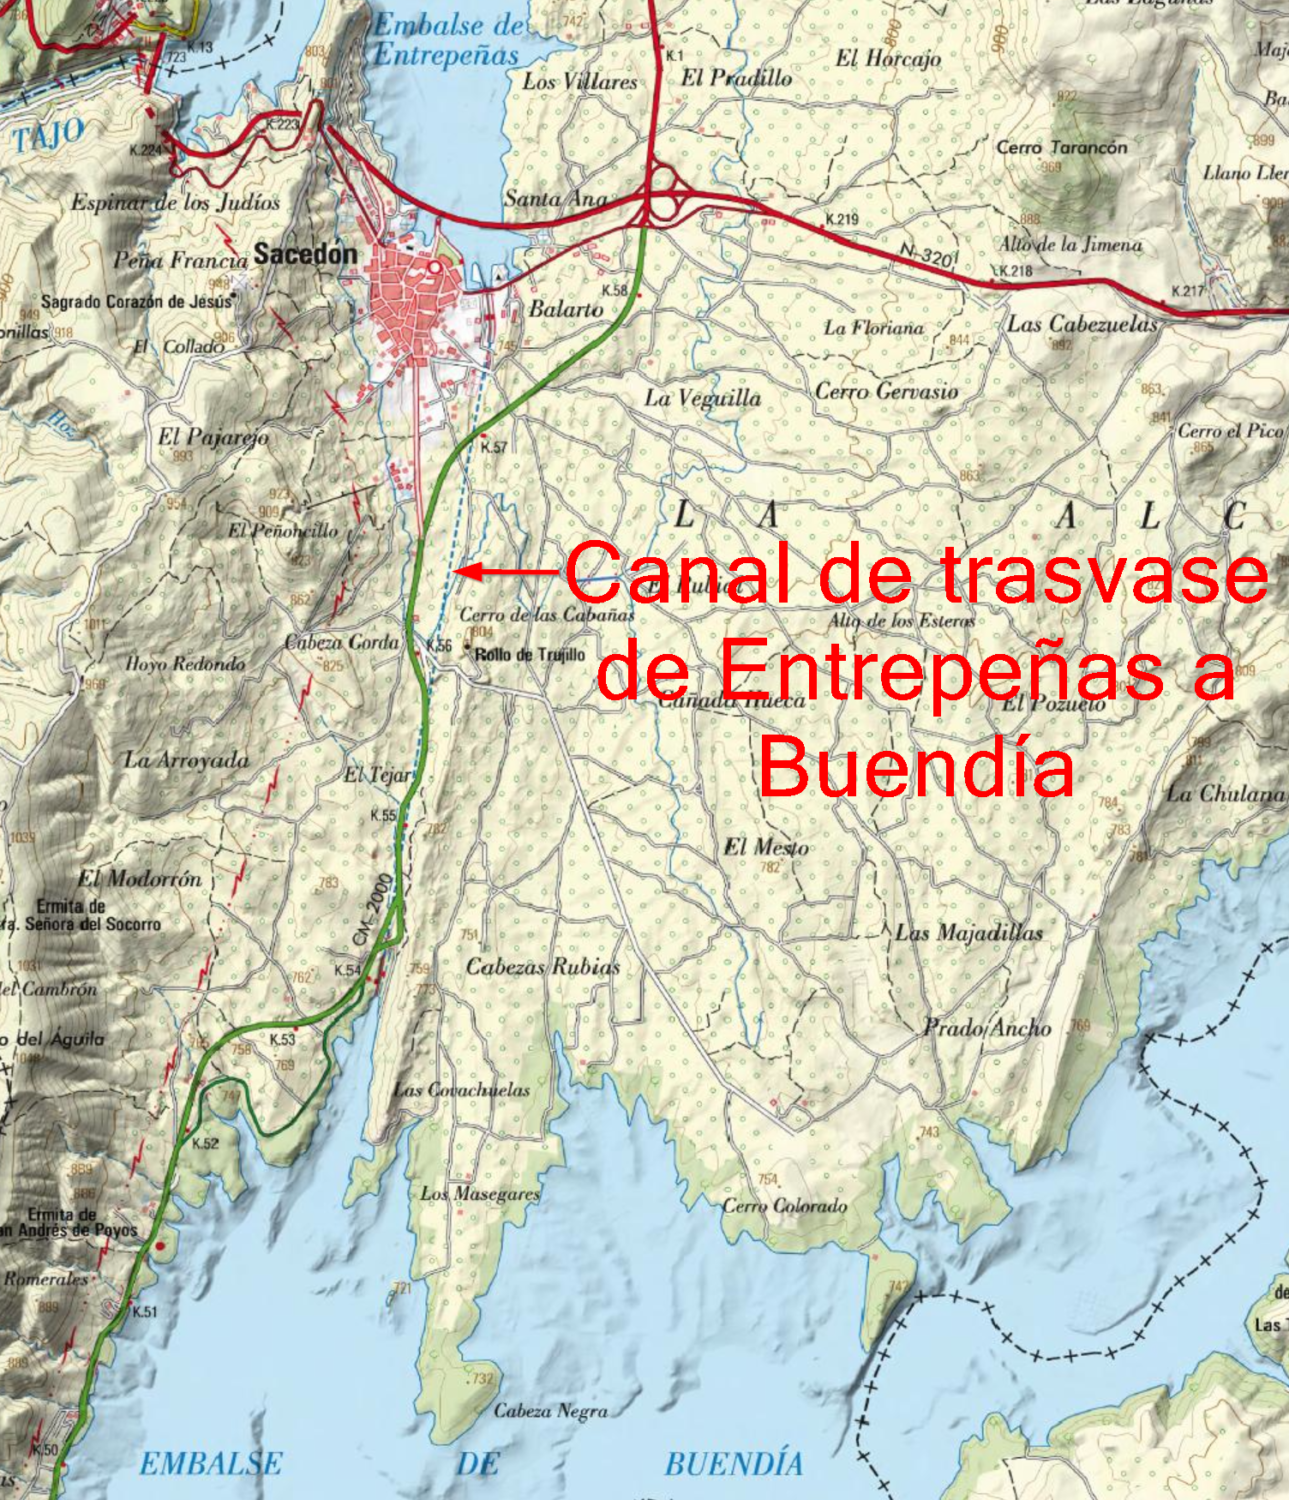 Situación del canal de trasvase de Entrepeñas a Buendía sobre el mapa 1/25000. Feunte: visor Iberpix del IGN